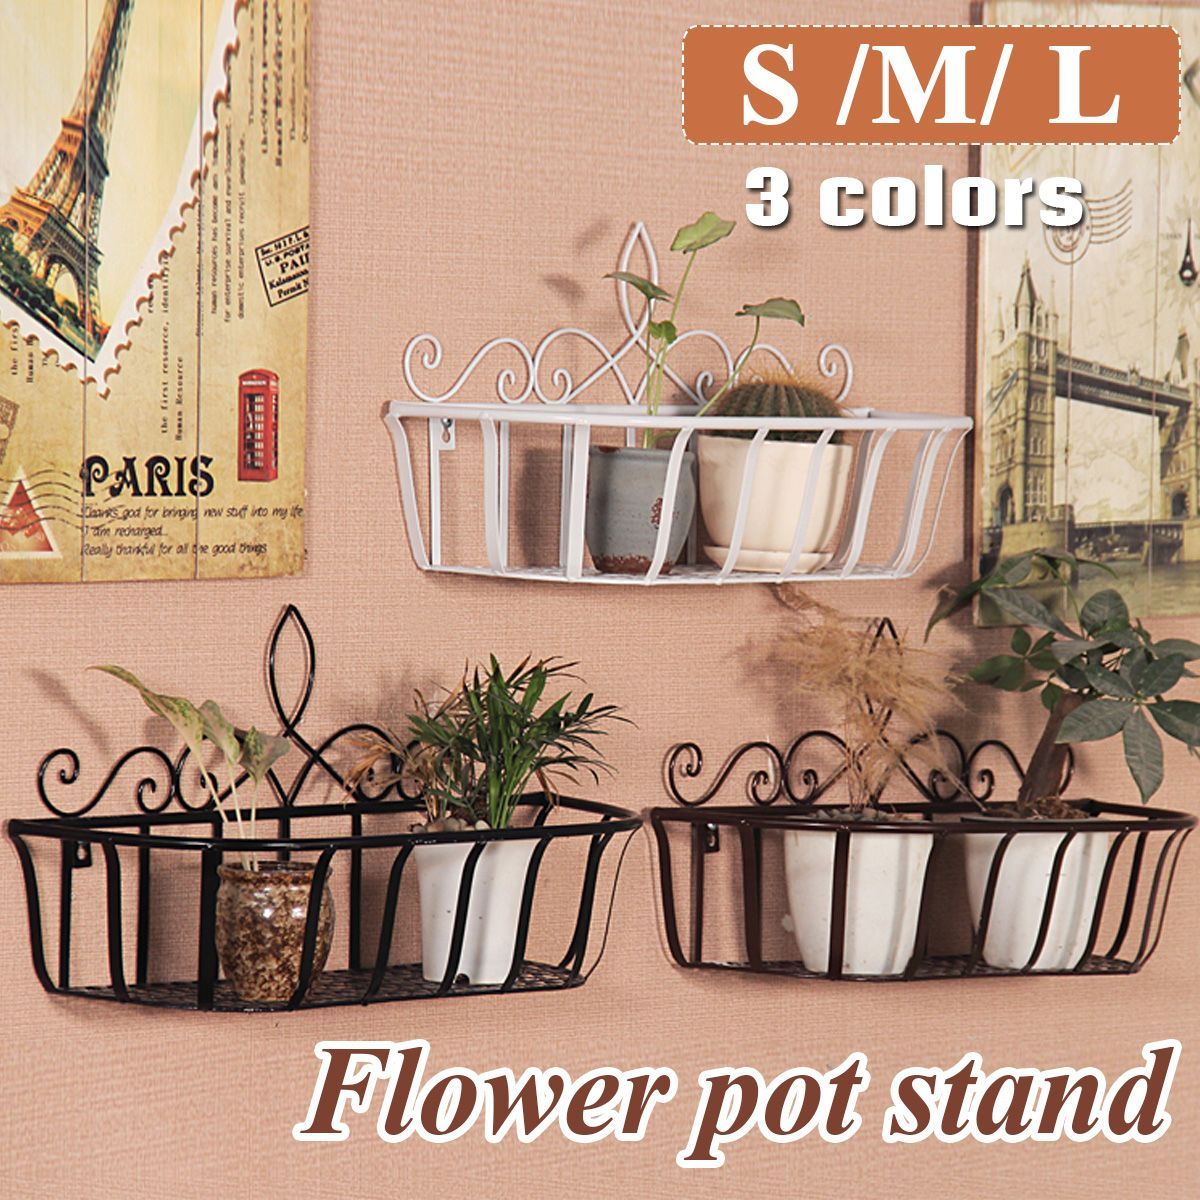 BlackWhiteBronze-SML-Iron-Flower-Pot-Stand-Small-Pot-Wall-Holder-1727480